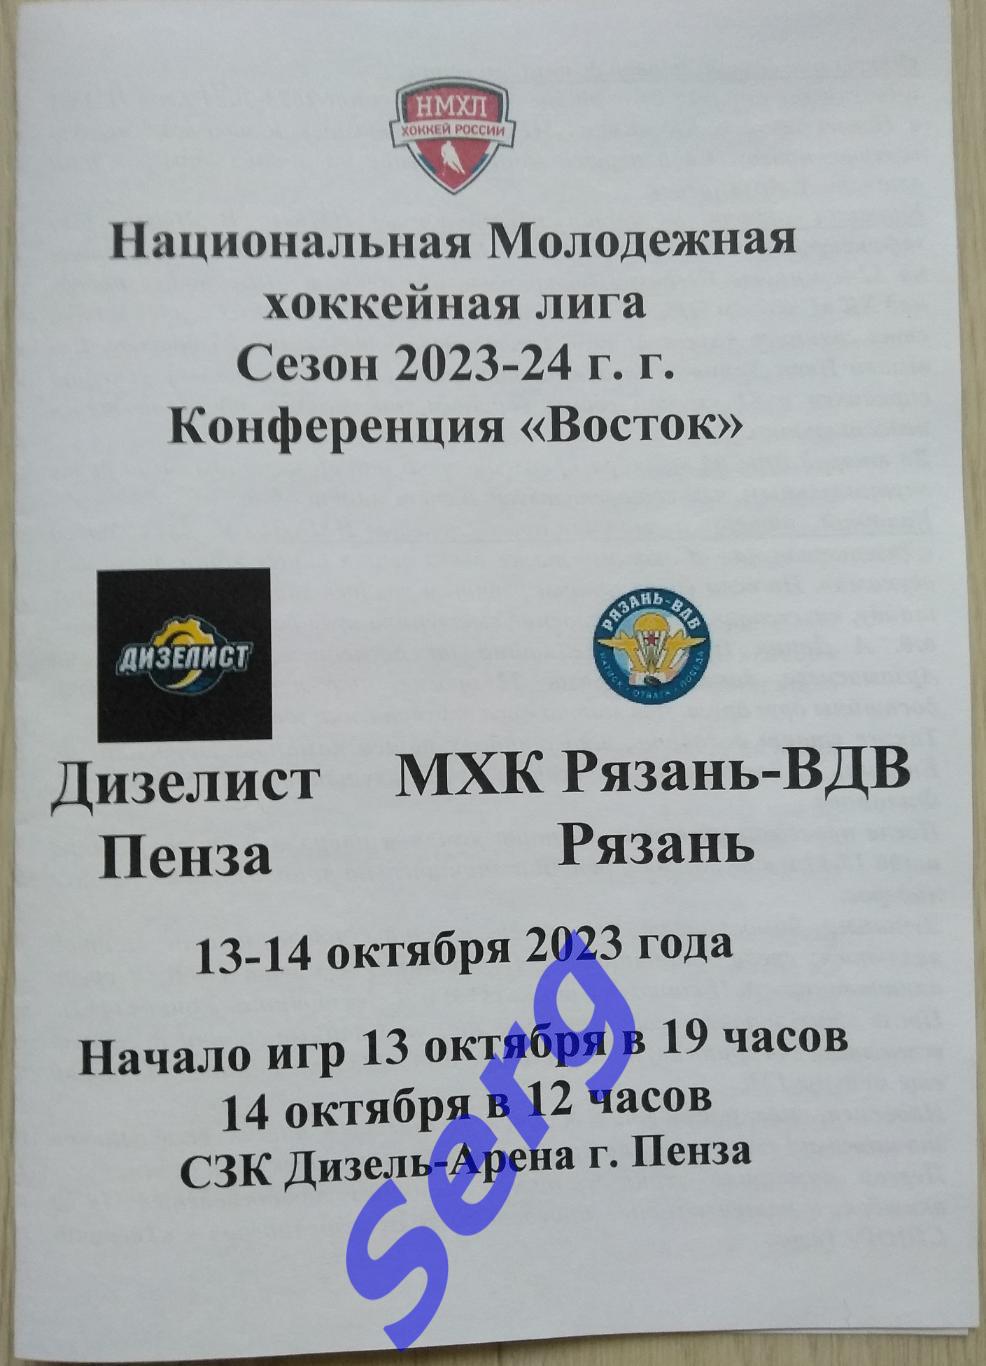 МХК Дизелист Пенза - МХК Рязань-ВДВ Рязань - 13-14 октября 2023 год. НМХЛ